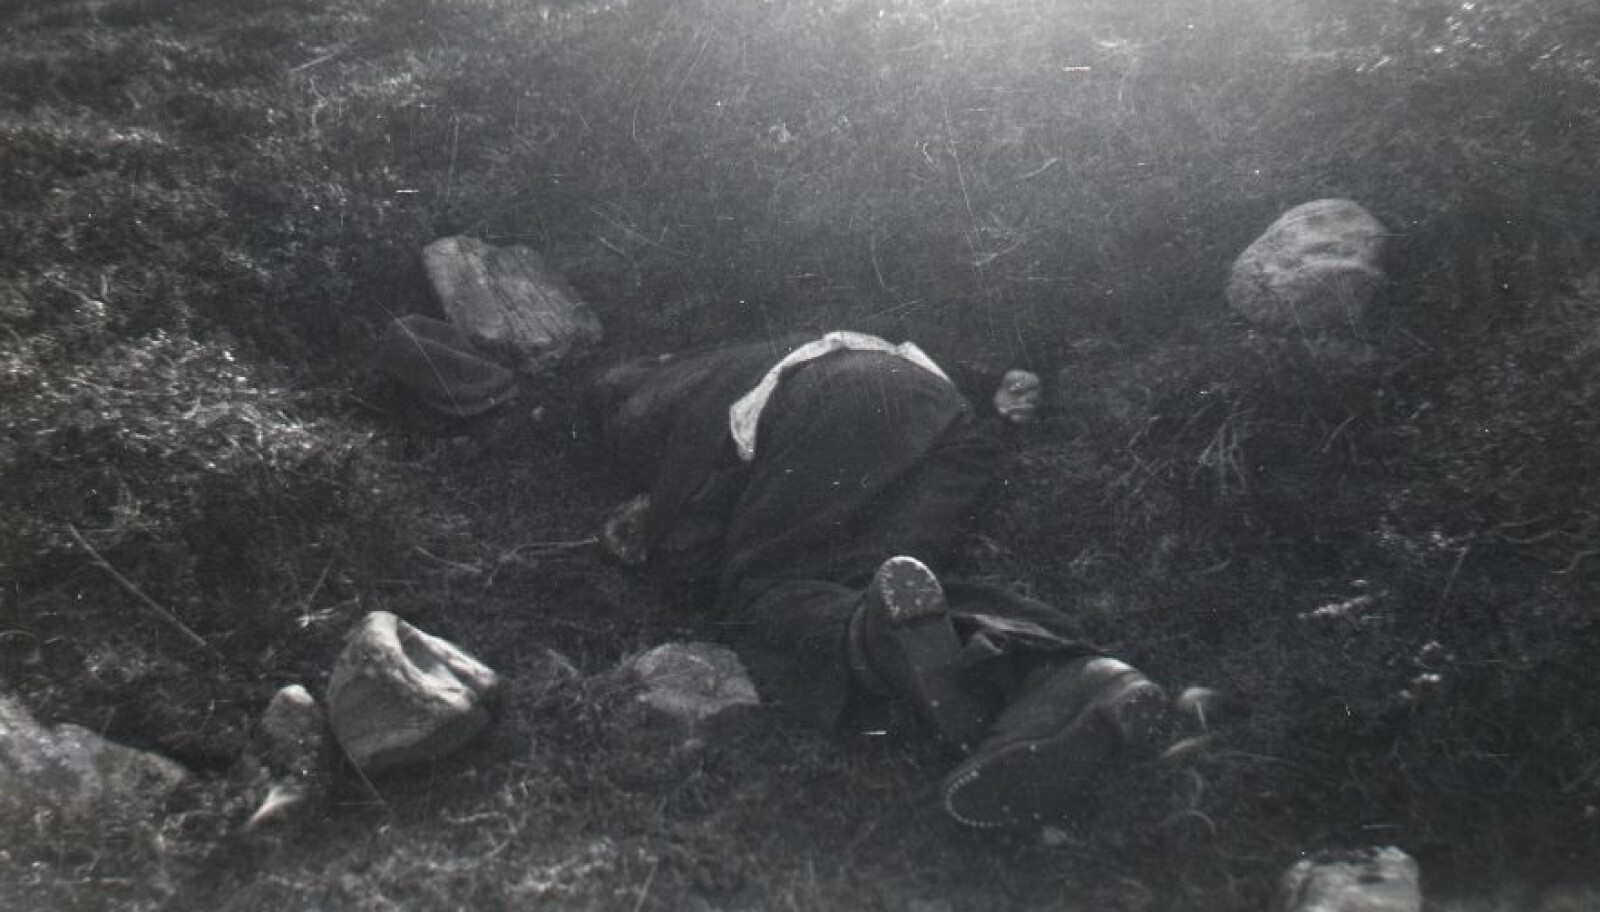 KRIGSFORBRYTELSER: Seks forsvarsløse menn ble skutt og drept av tyske soldater kort tid før Tyskland kapitulerte.